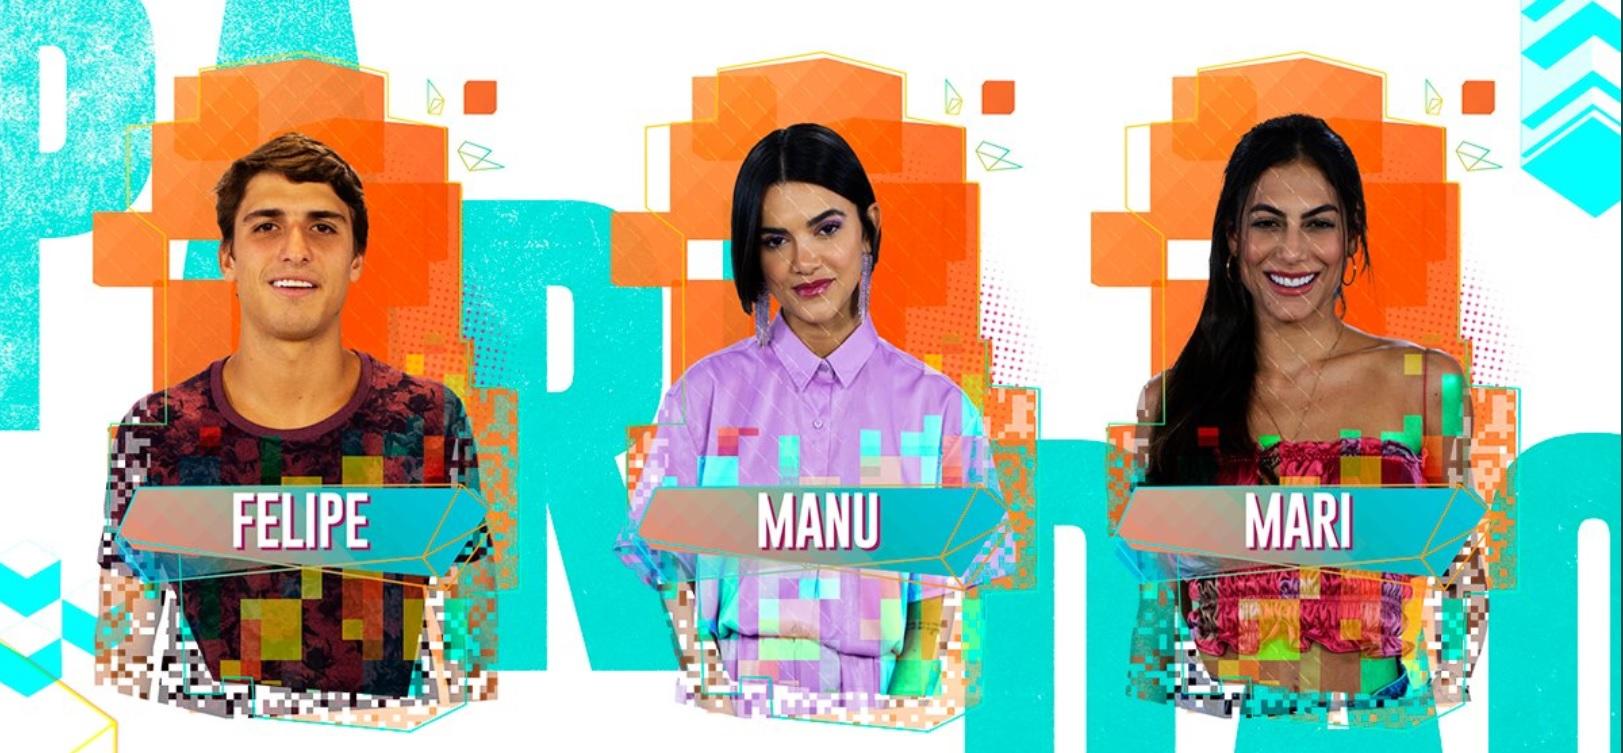 Paredão da semana composto por Prior, Manu e Mari (Foto: TV Globo)